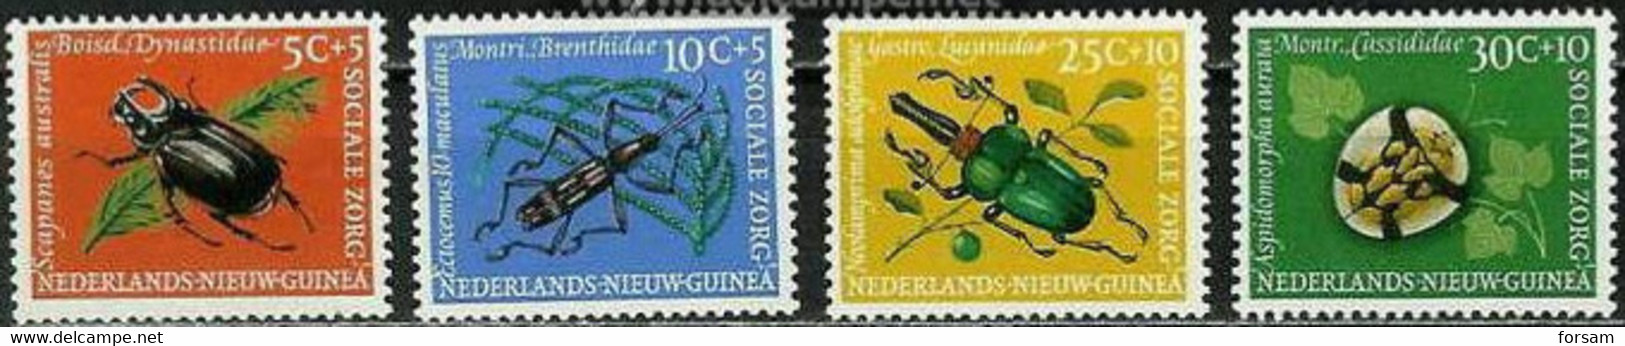 NETHERLANDS NEW GUINEA..1961..Michel # 69-72...MLH. - Nouvelle Guinée Néerlandaise